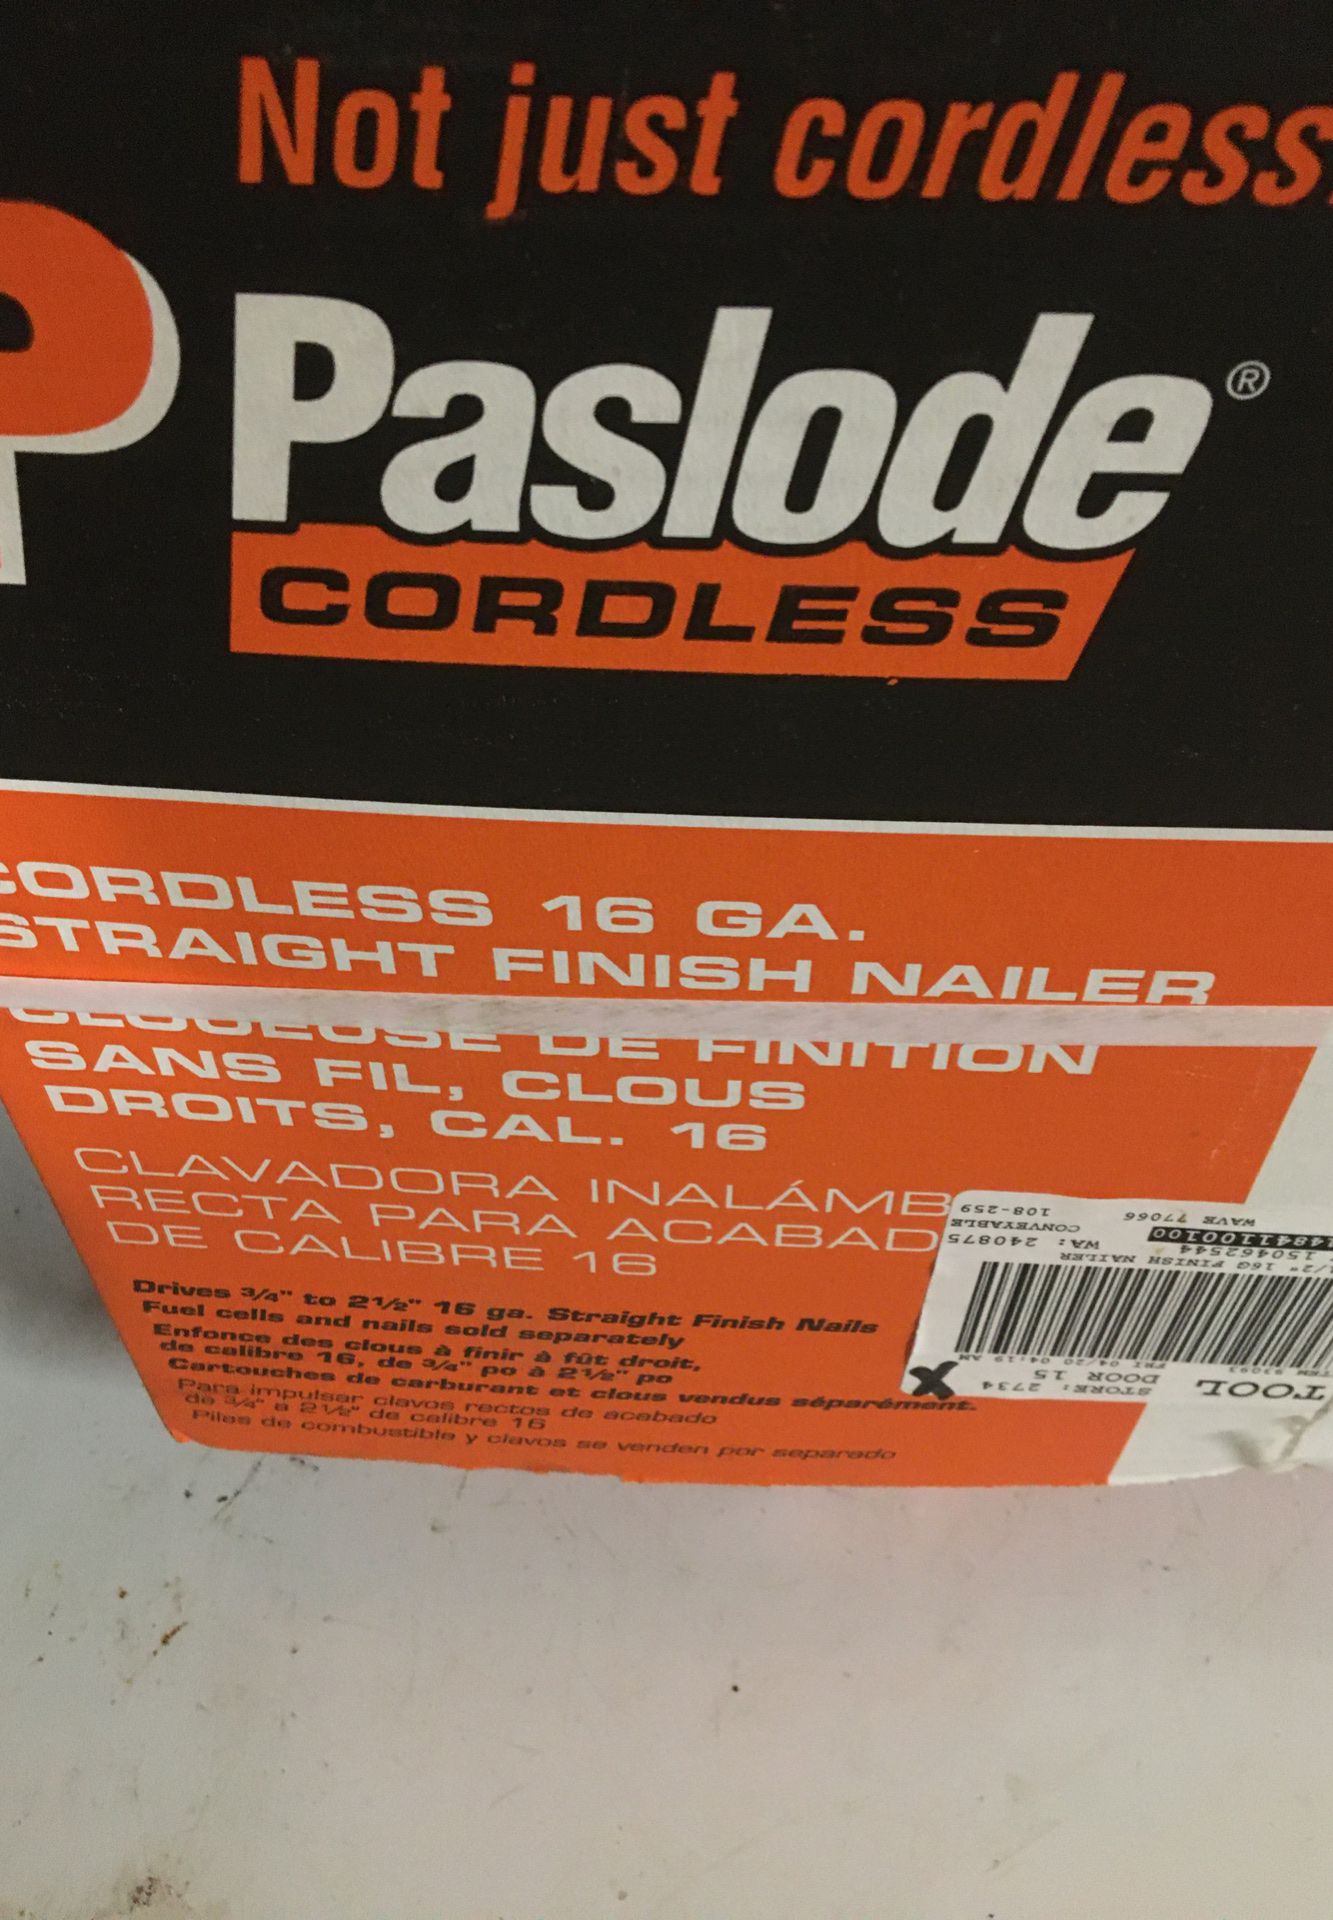 Pasload cordless 16 ga finish nailer